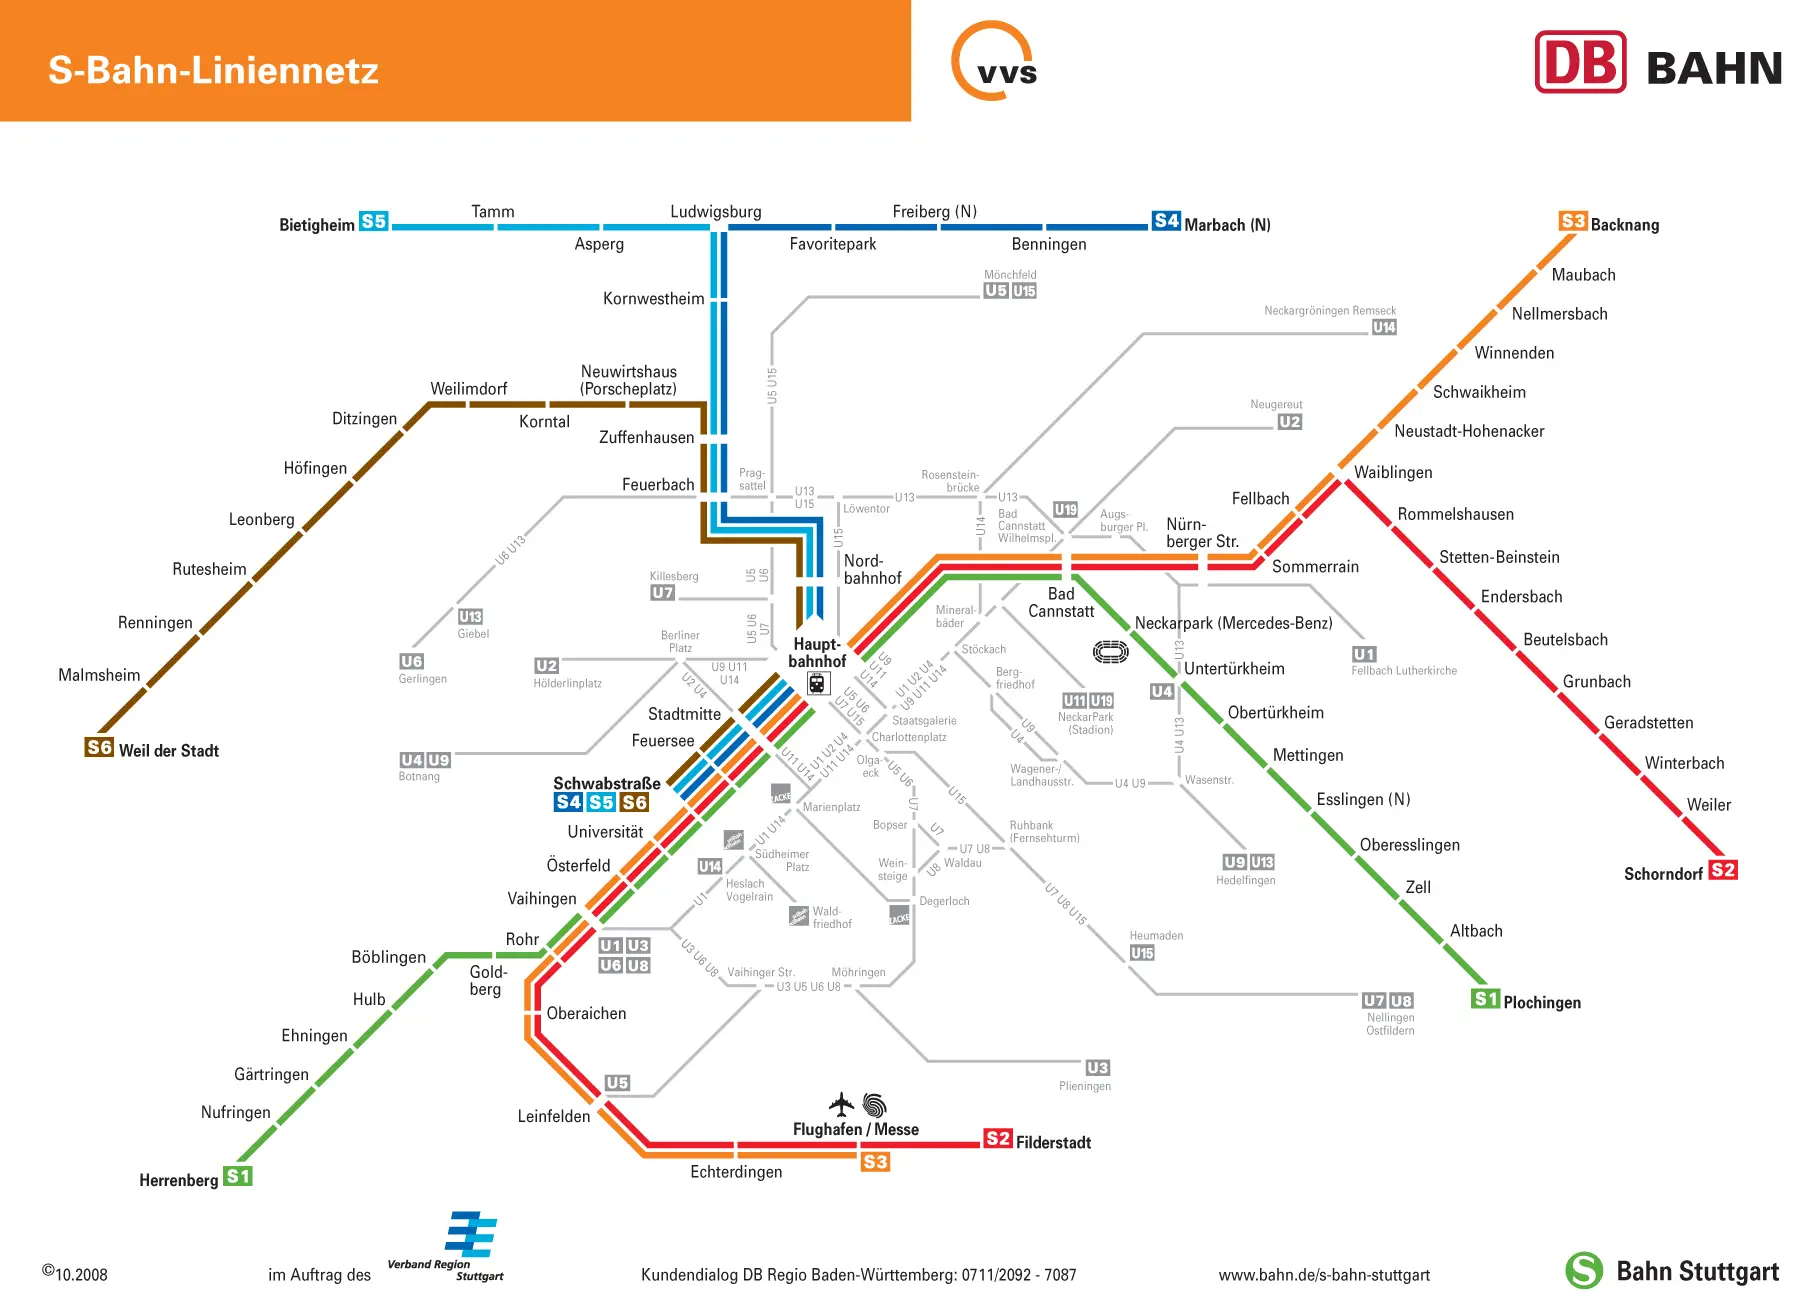 Stuttgart Suburban Metro Map (s Bahn) - Mapsof.net